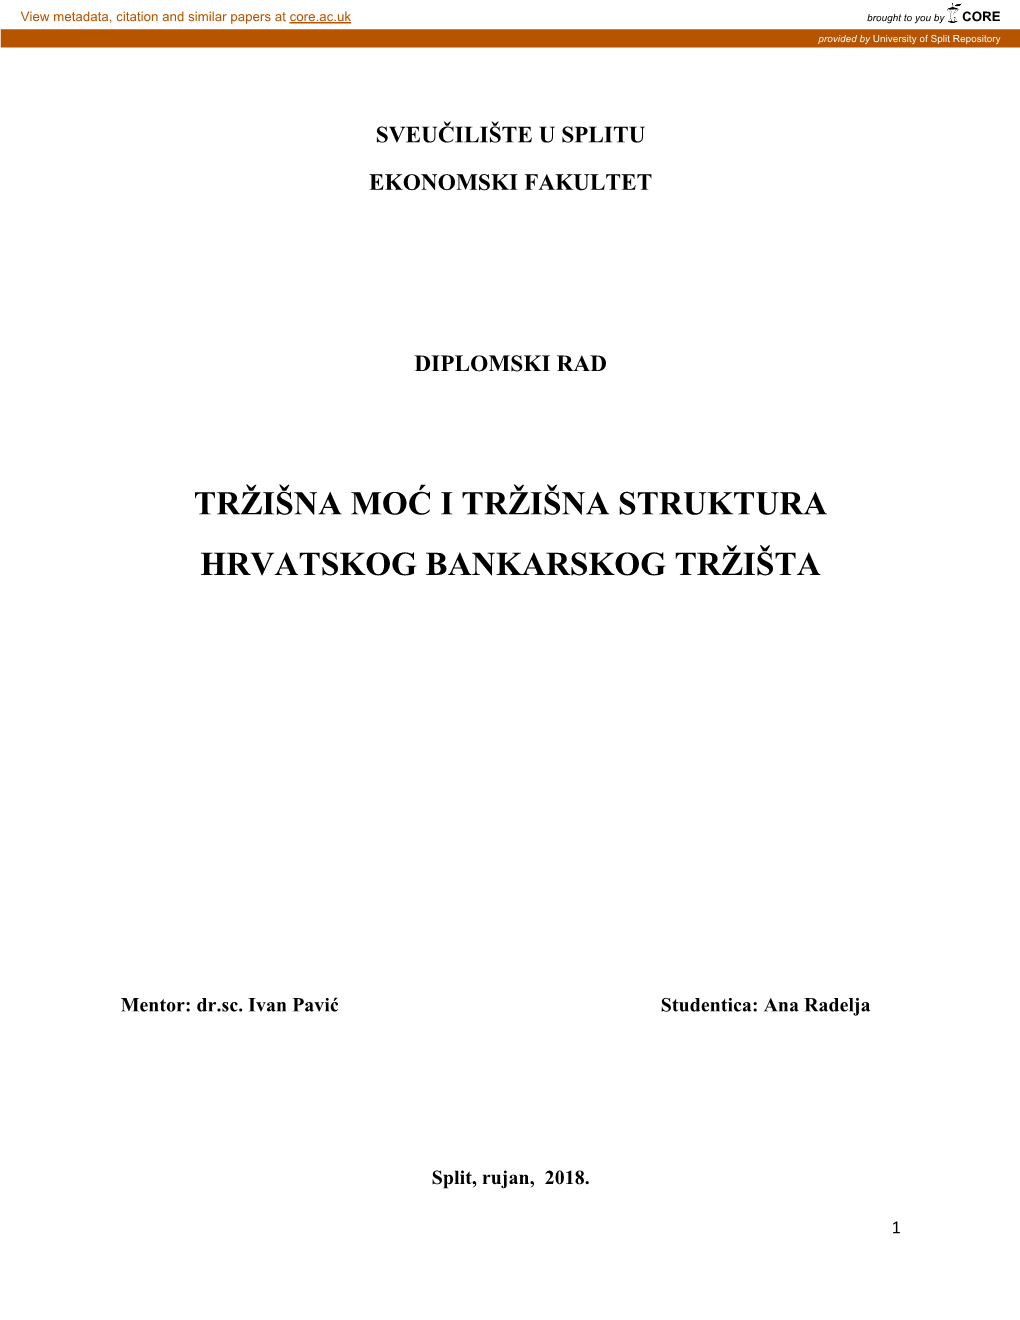 Trţišna Moć I Trţišna Struktura Hrvatskog Bankarskog Trţišta